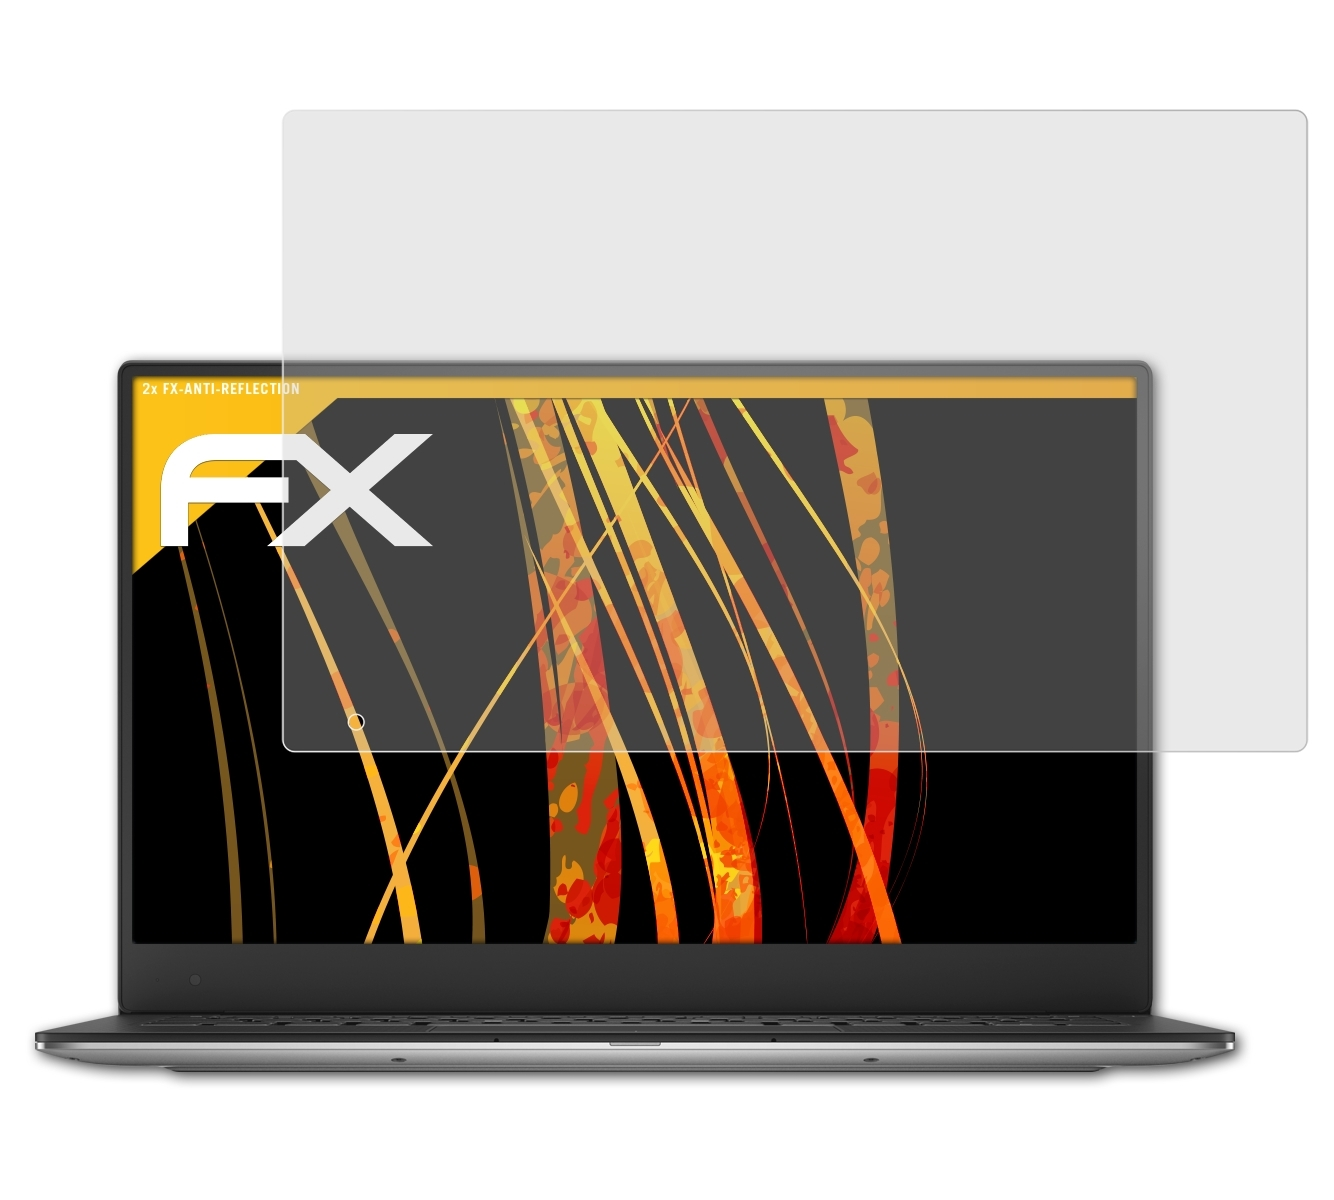 ATFOLIX 2x FX-Antireflex Displayschutz(für Dell Ultrabook Version (9343 13 QHD+, 2015)) XPS